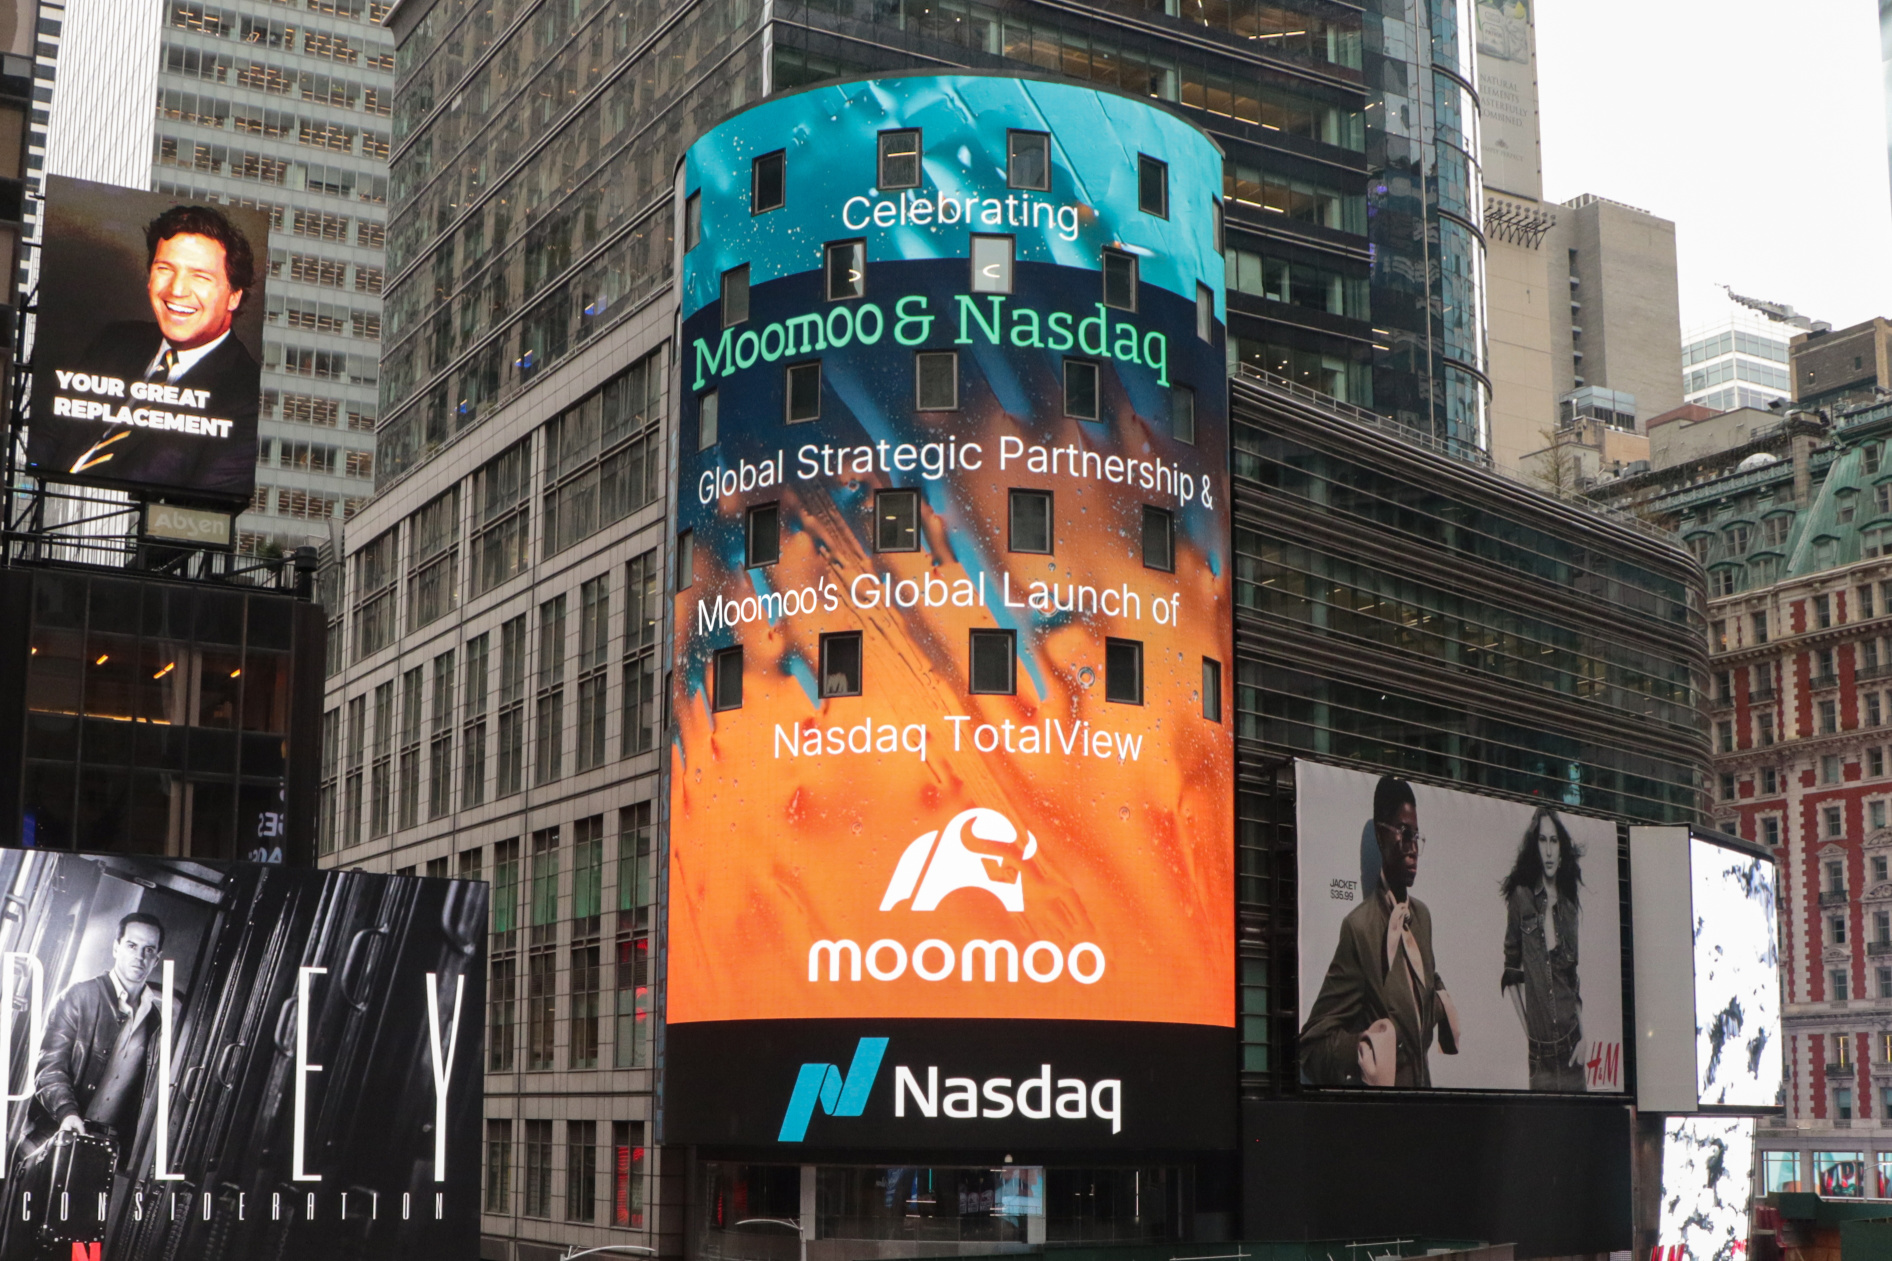 Moomoo和Nasdaq庆祝为期六年的合作关系，并宣布建立全球战略合作伙伴关系，以继续促进投资者教育